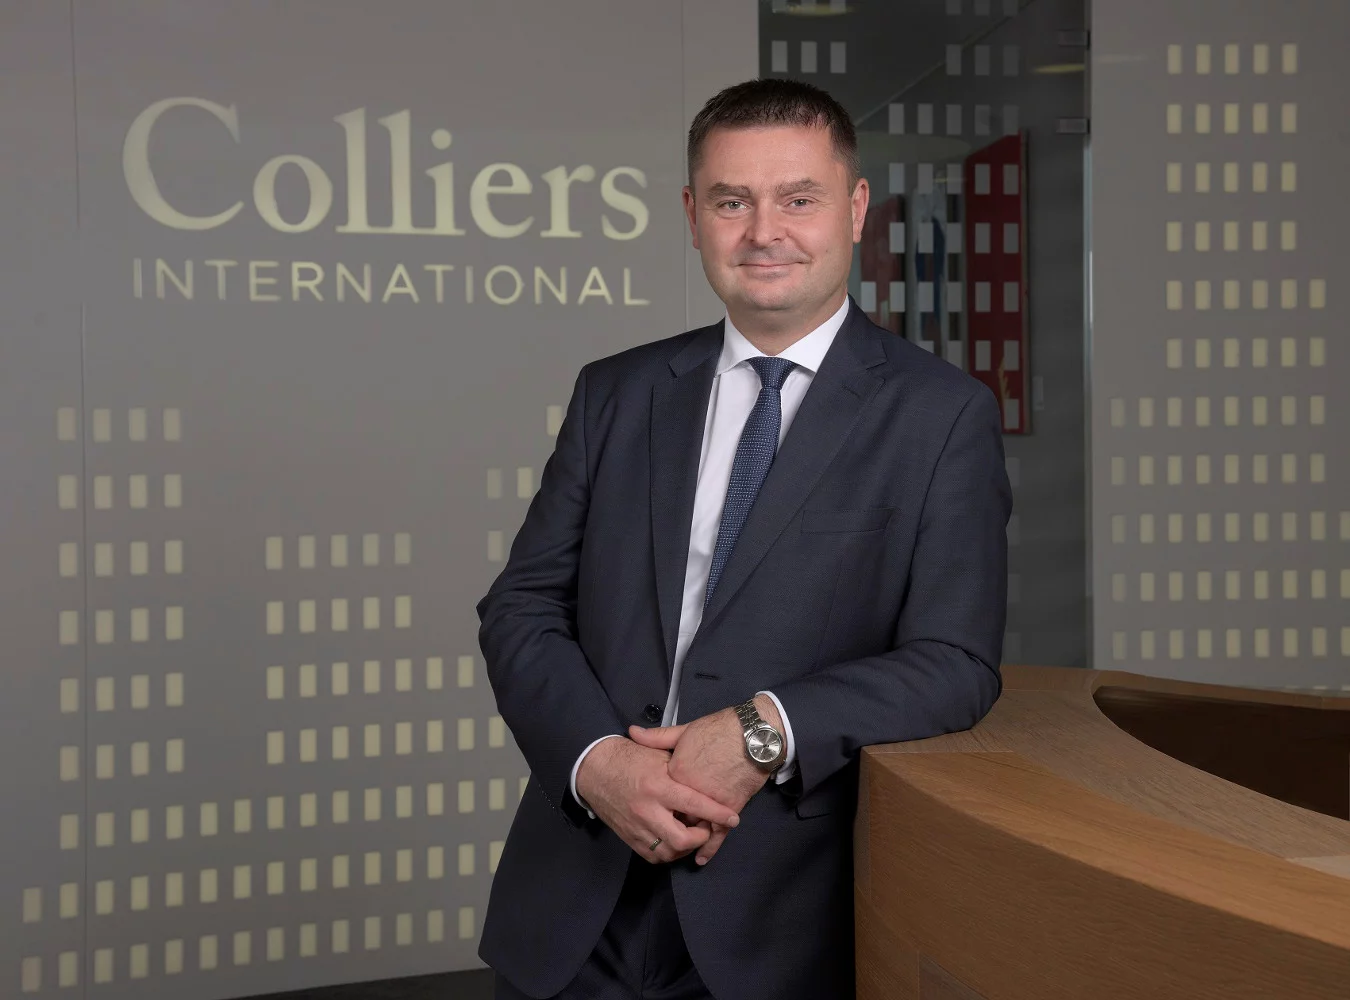 Marcin Włodarczyk, dyrektor regionalny Colliers International w Łodzi